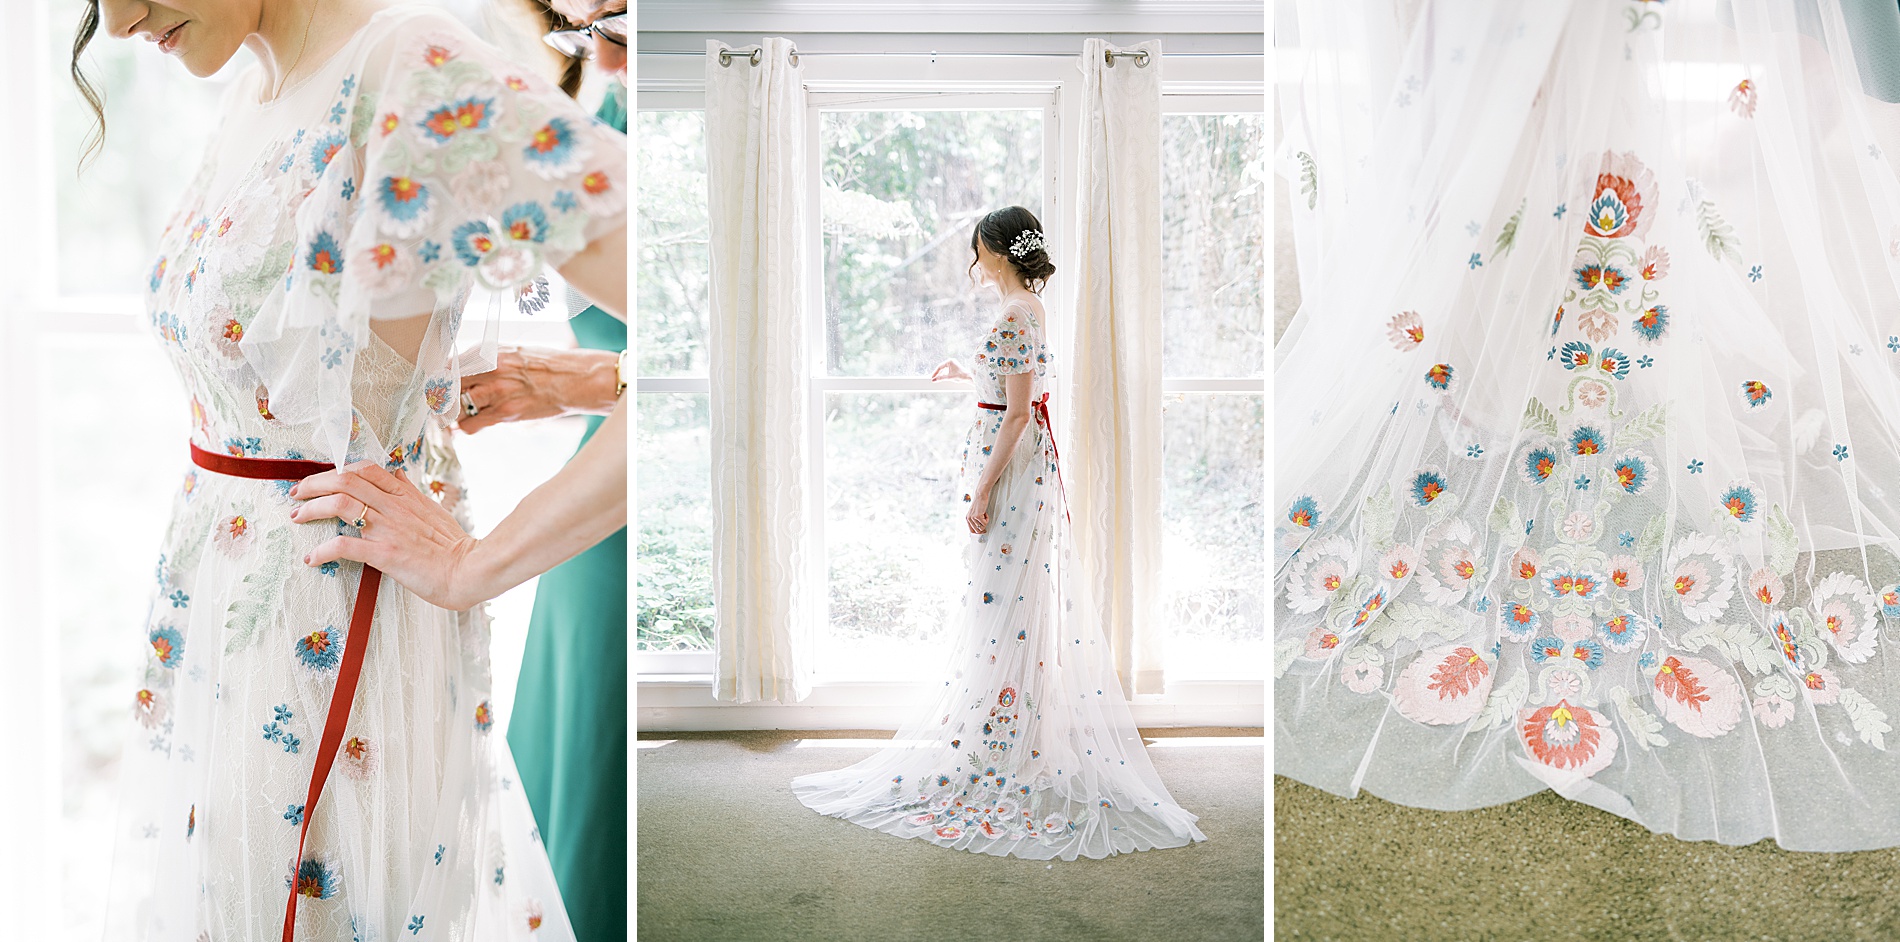 unique wedding dress with colorful floral details 